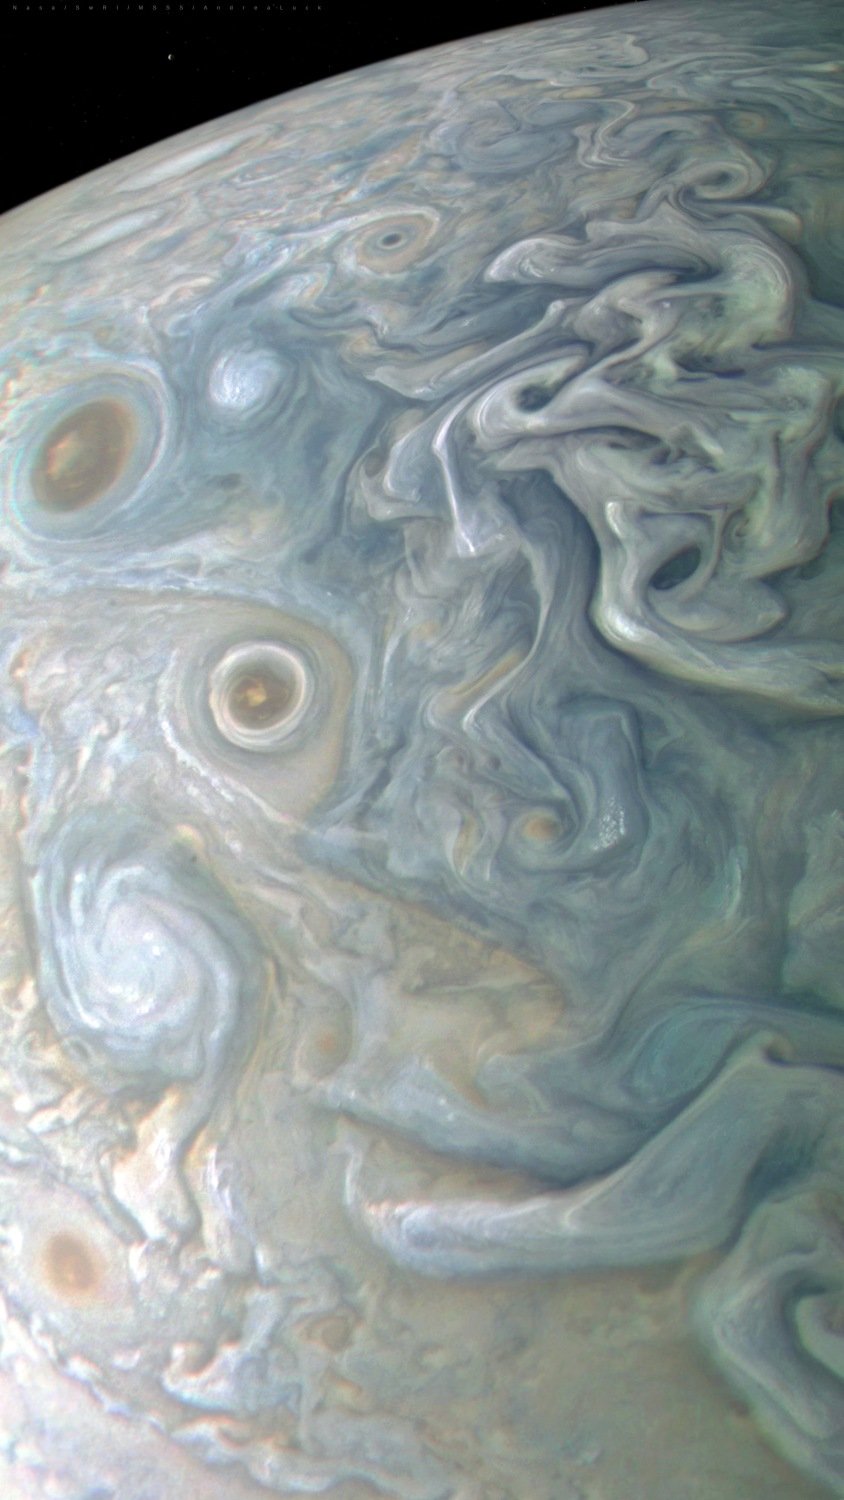 Čerstvé snímky Jupitera berou dech. Prohlédněte si krále planet zblízka